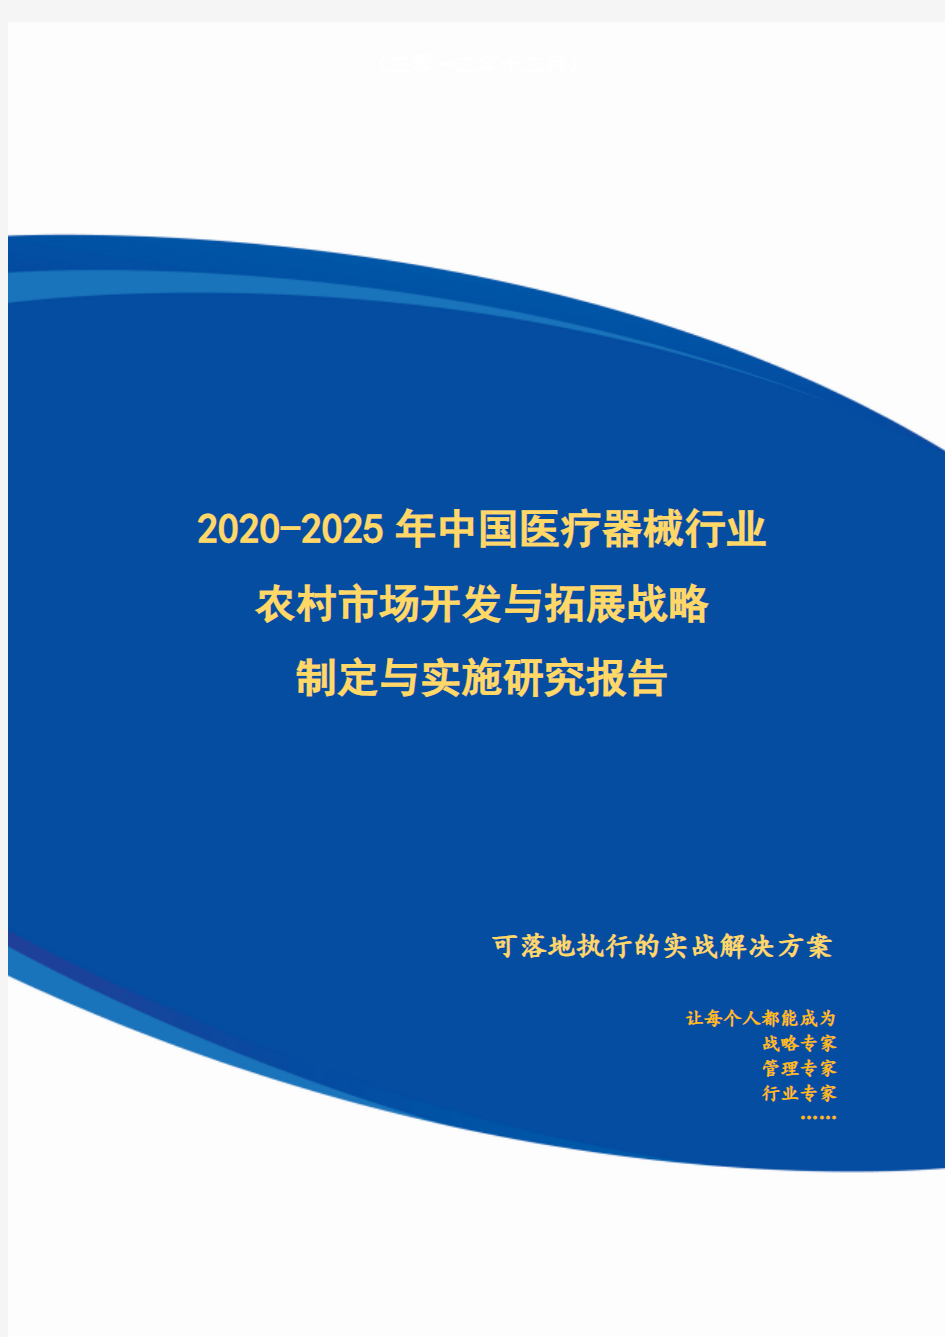 2020-2025年中国医疗器械行业农村市场开发与拓展战略制定与实施研究报告